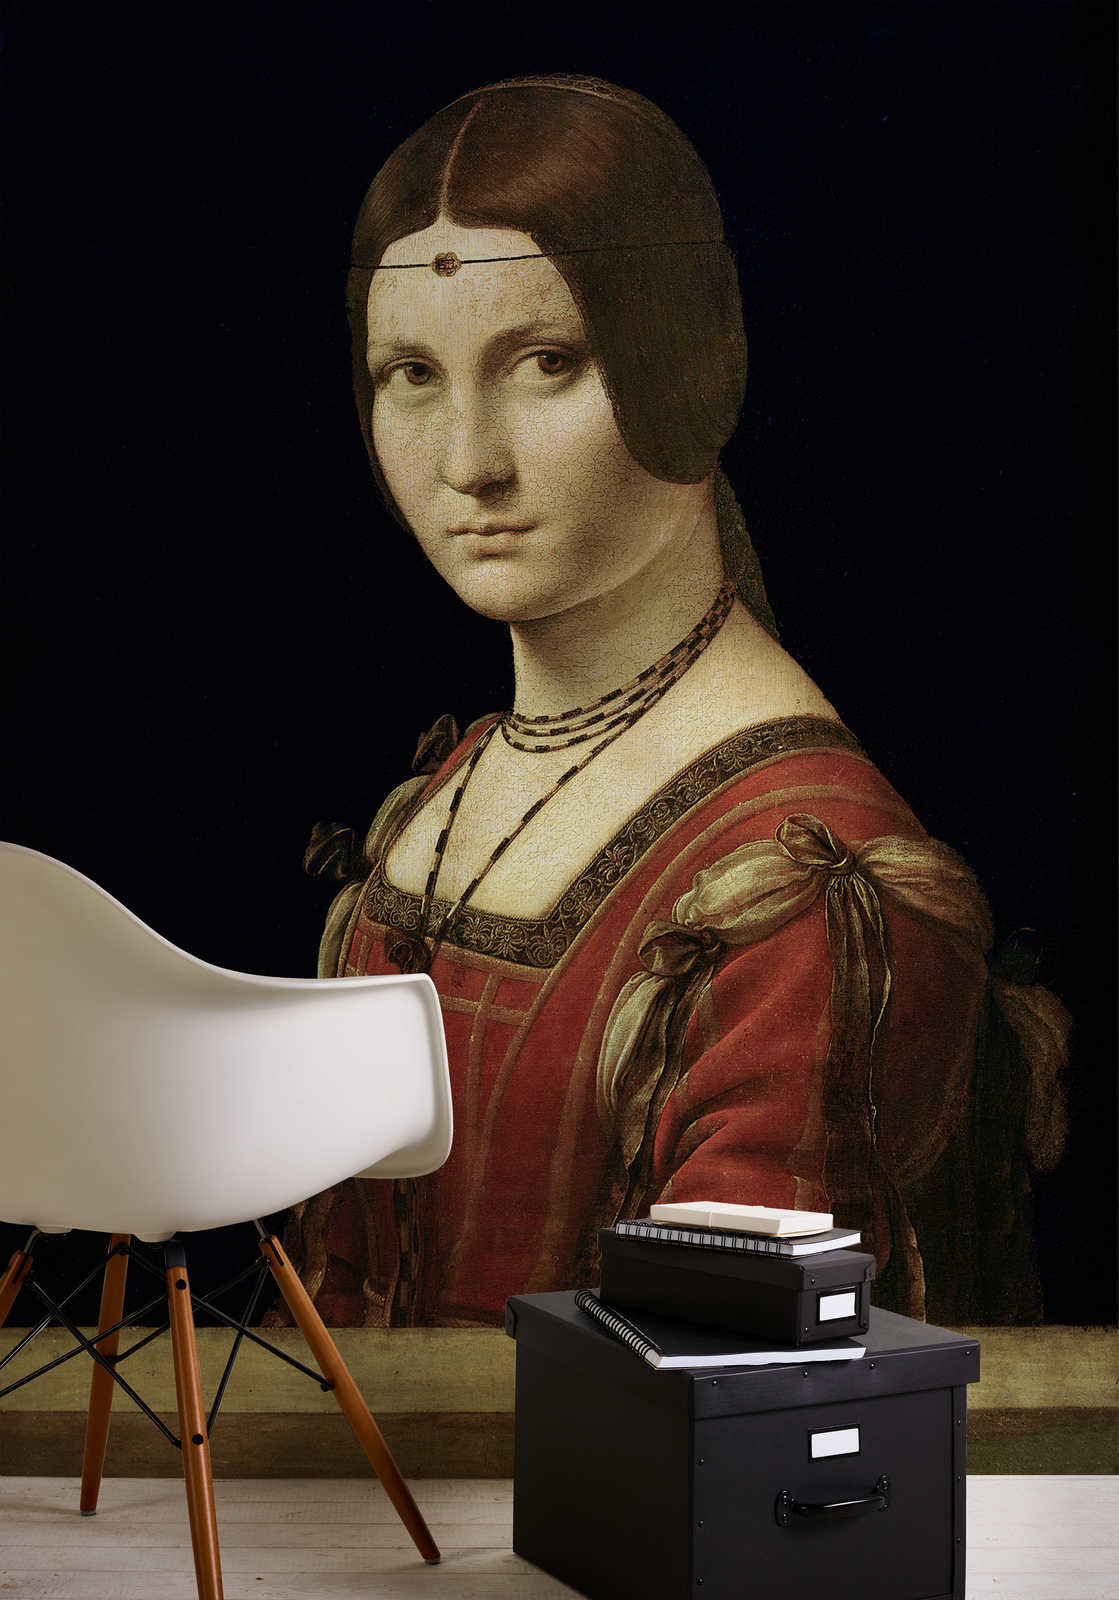             Fototapete "Porträt einer Dame vom Mailänder Hof" von Leonardo da Vinci
        